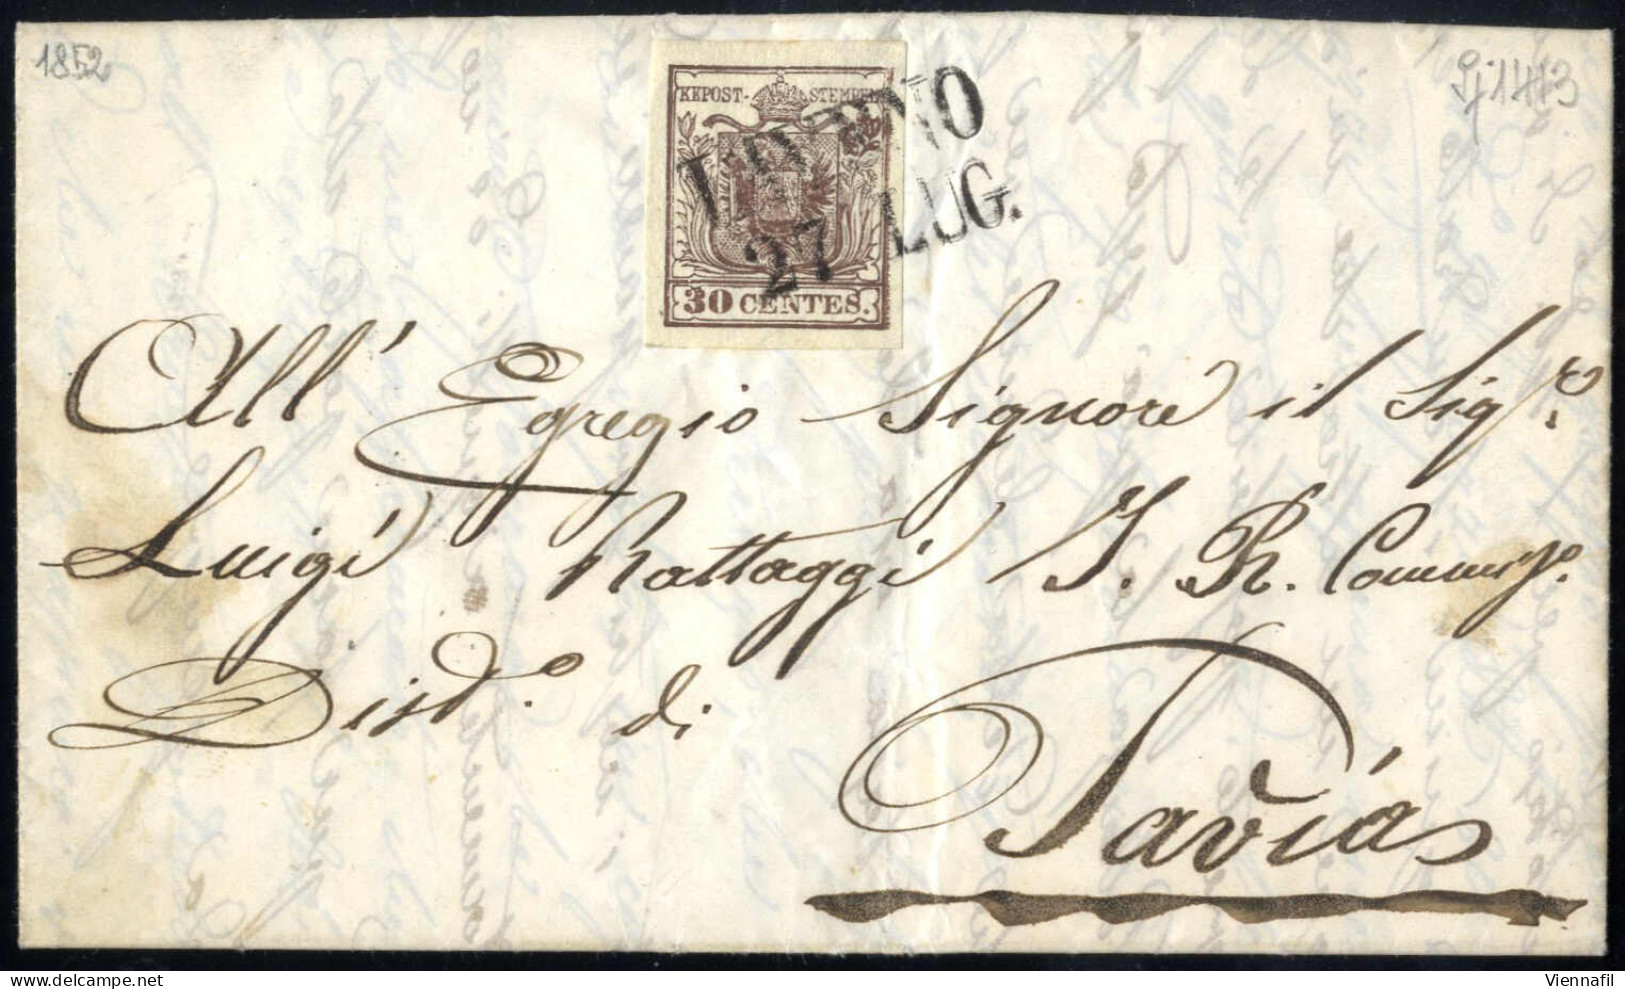 Cover LAVENO, Lettera Completa Del Testo Del 27.7.1852 Per Pavia, Affrancata Con 30 Cent. Bruno, Carta A Mano, I Tipo, A - Lombardo-Vénétie